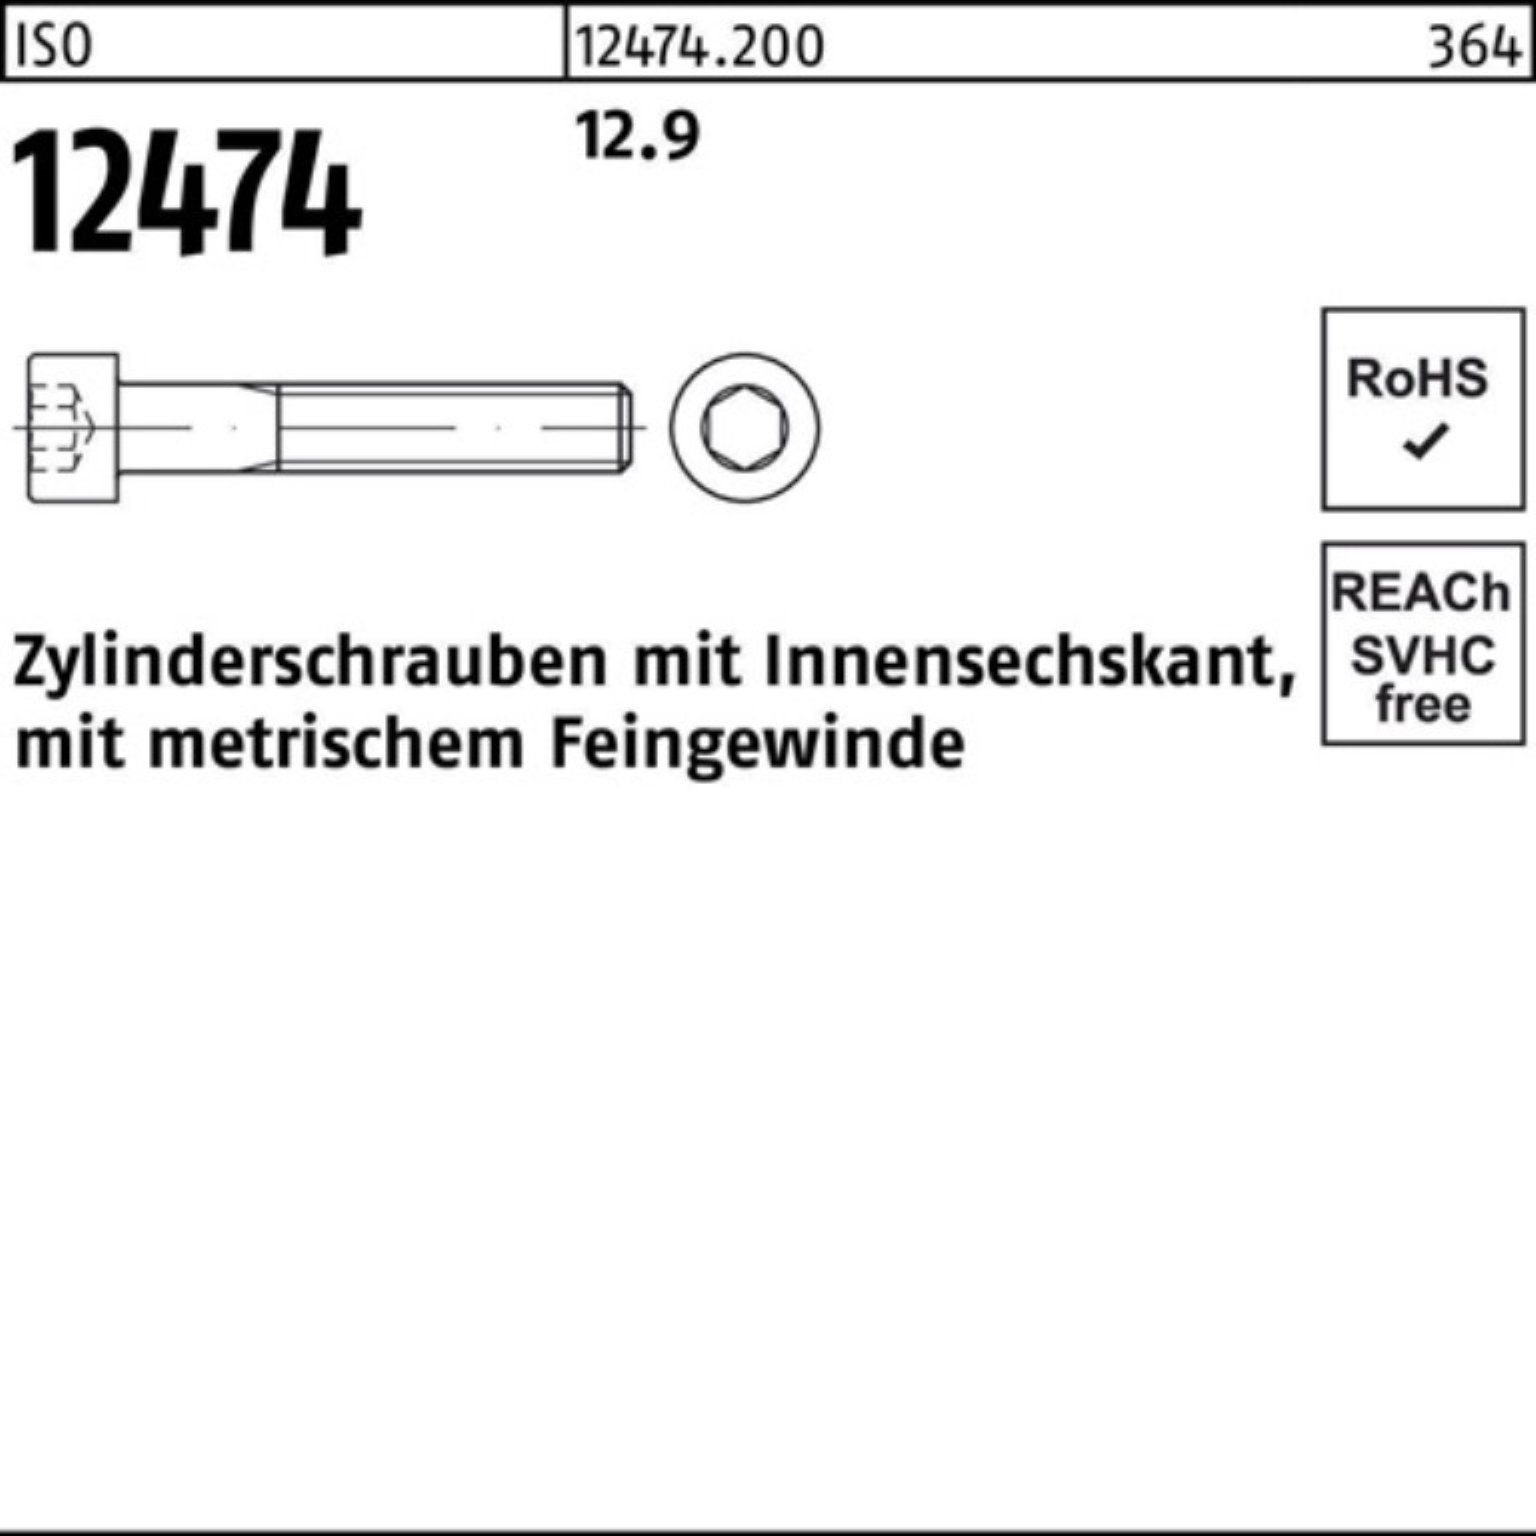 【Klassisch】 Reyher Zylinderschraube 100er 60 12.9 St 12474 Zylinderschraube Pack Innen-6kt 25 M20x1,5x ISO